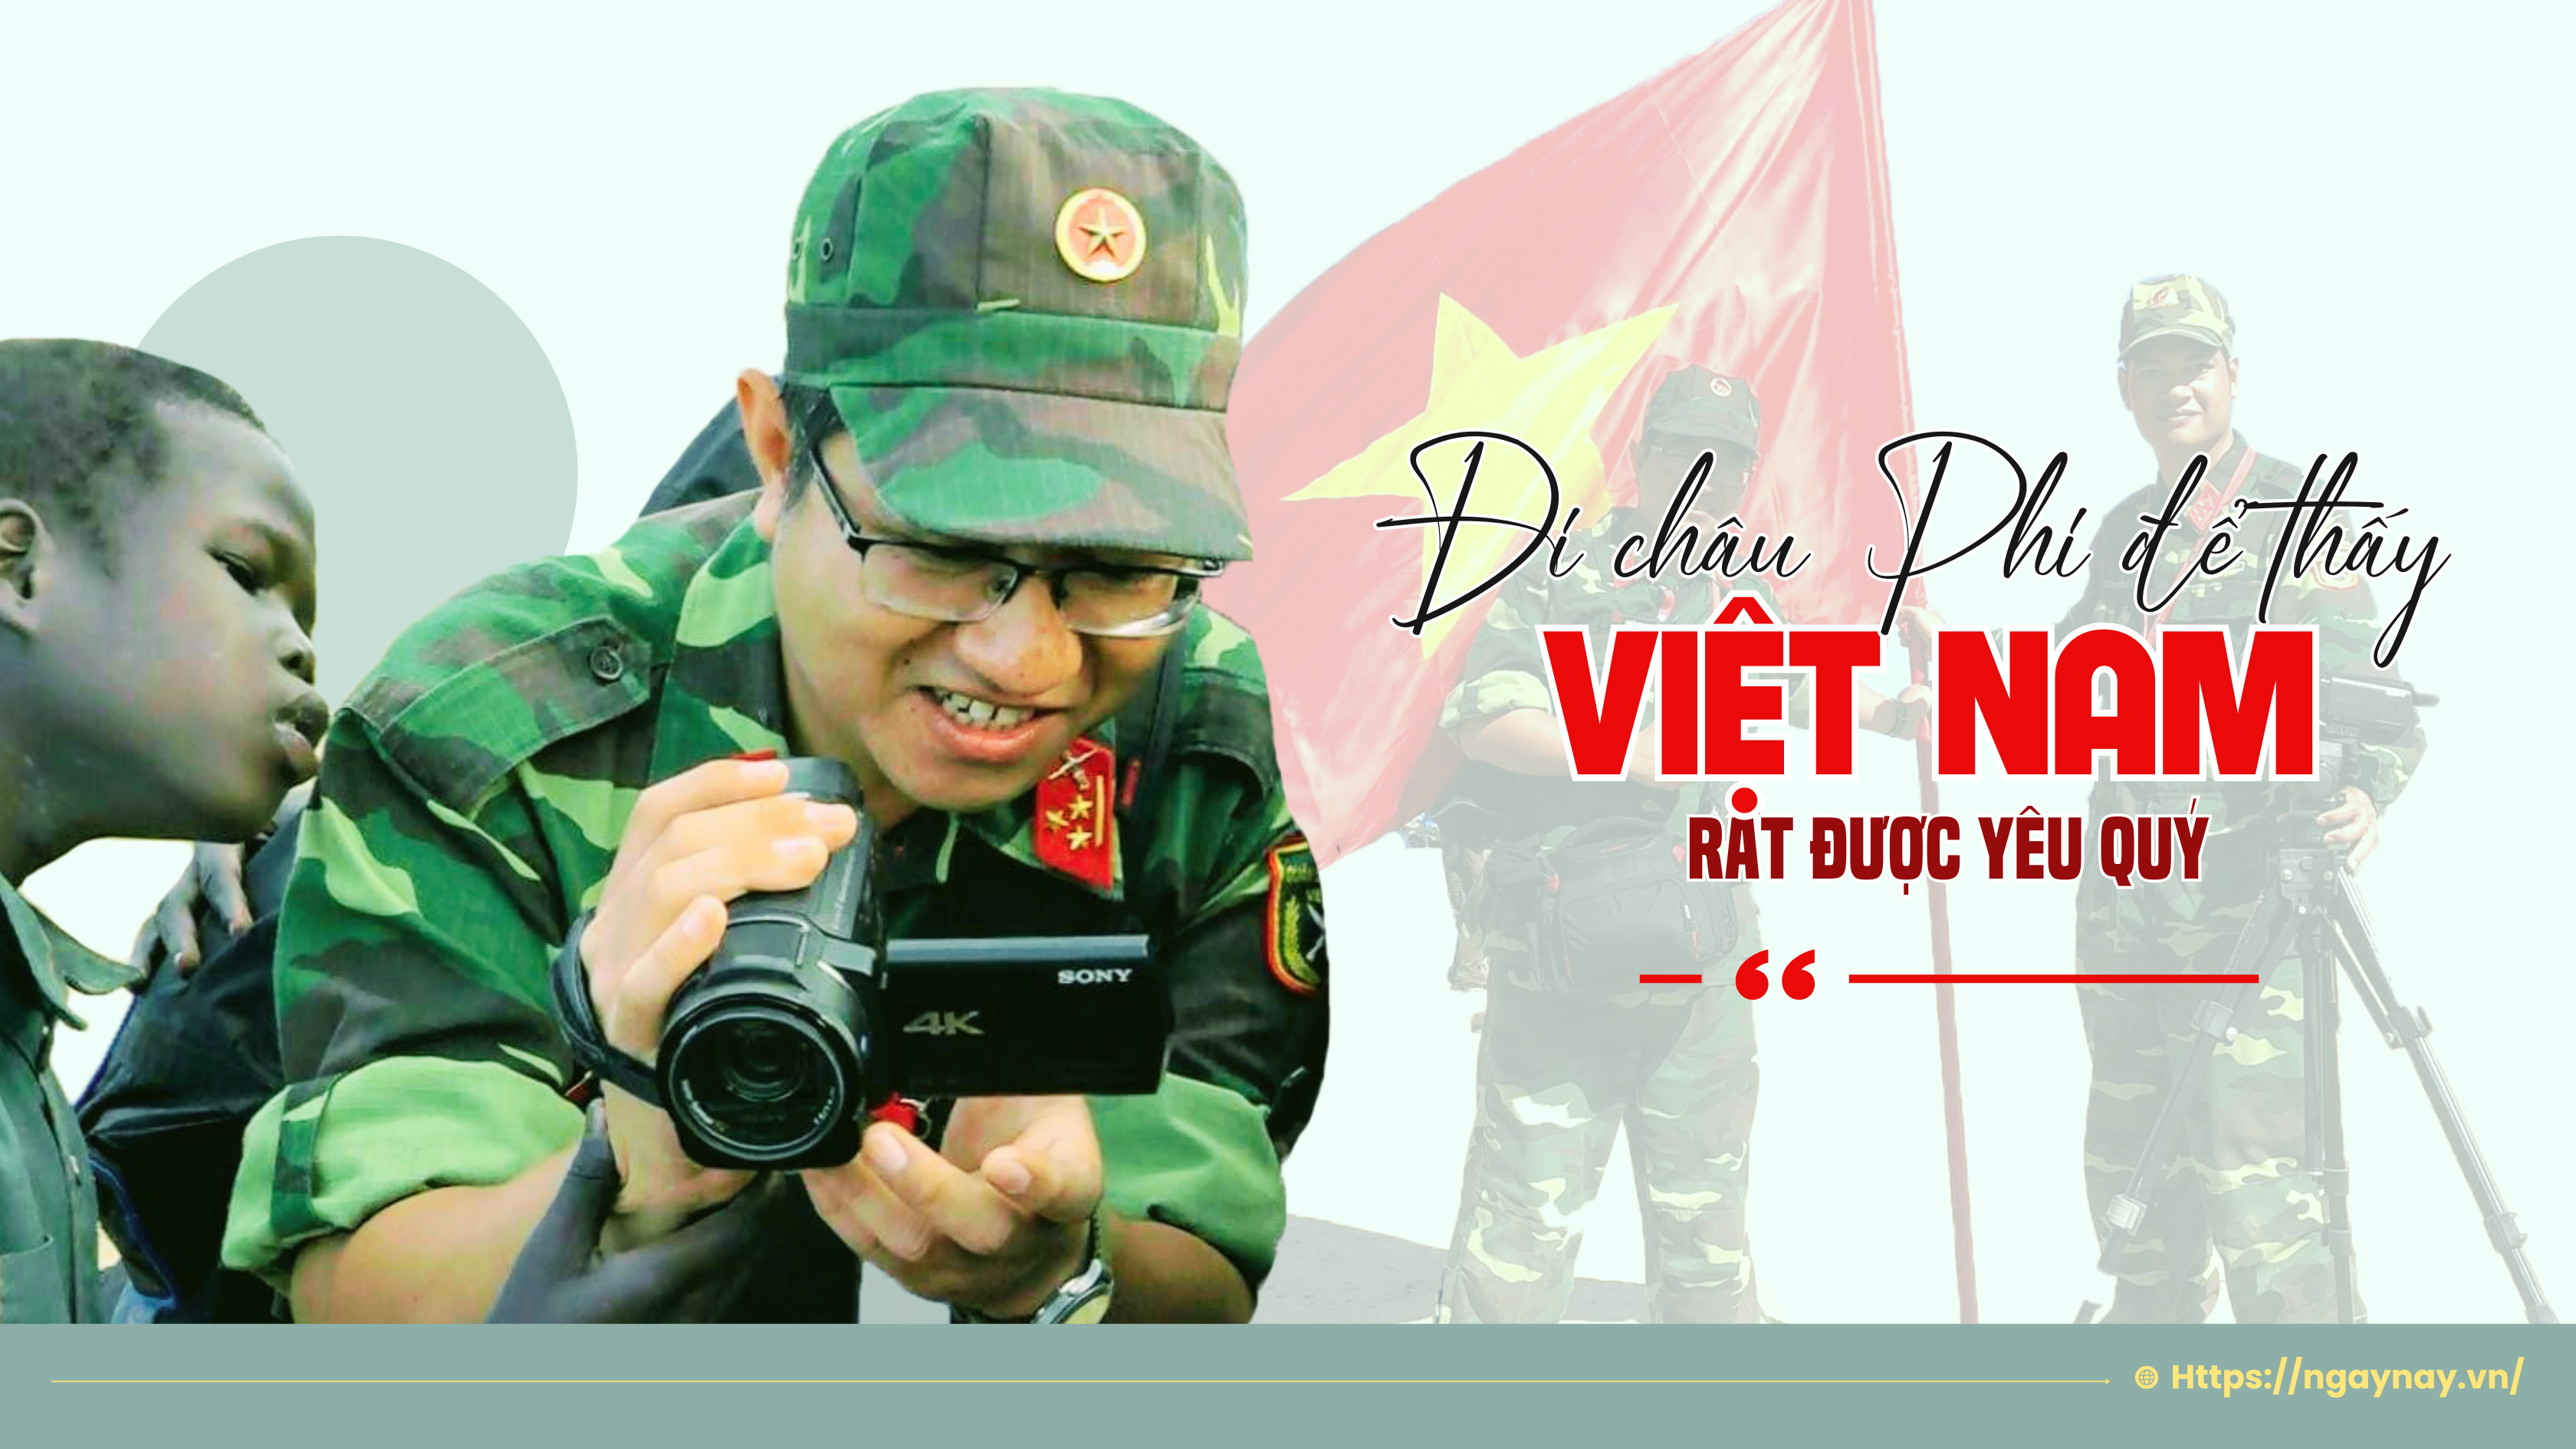 “Đi châu Phi để thấy Việt Nam rất được yêu quý”